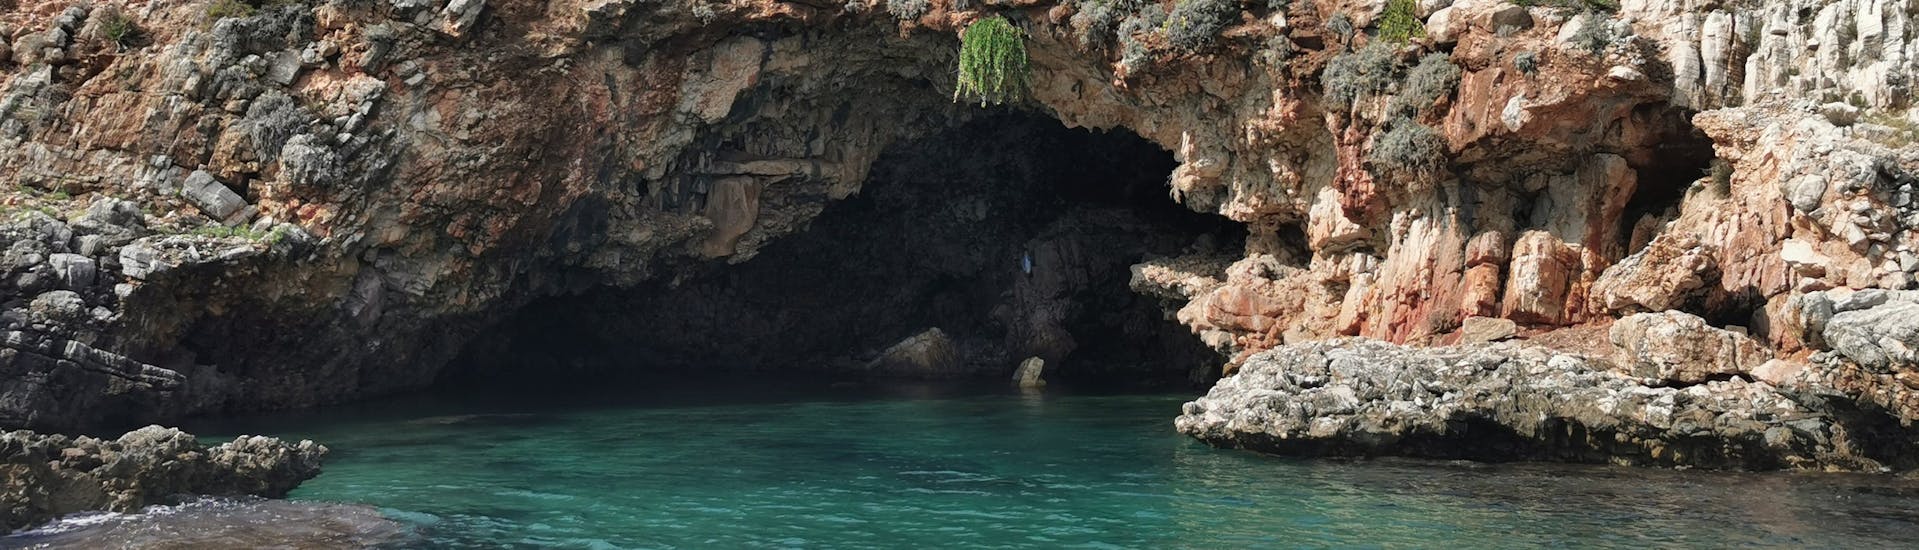 De kust van Riserva dello Zingaro heeft vele prachtige grotten die kunnen worden bewonderd tijdens de boottocht van Castellamare naar Riserva dello Zingaro.